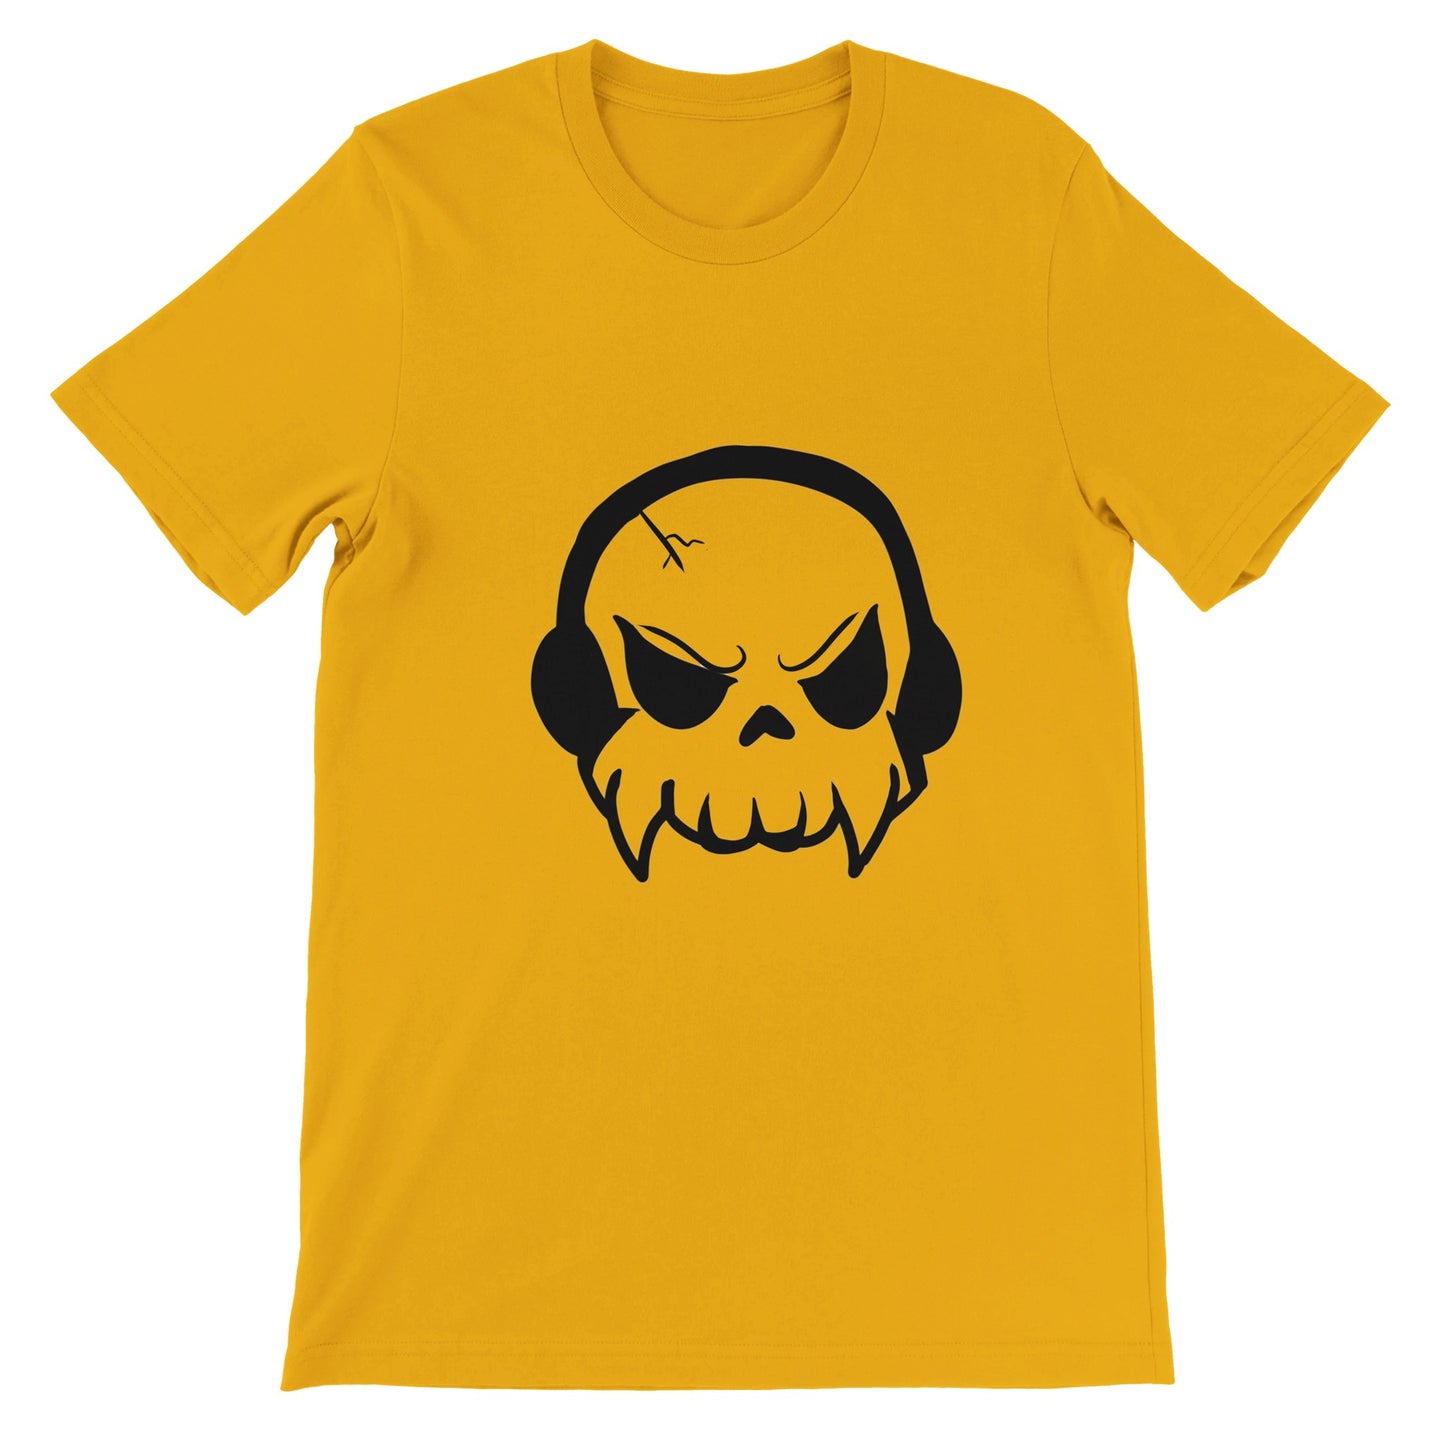 Música o Muerte - Camiseta Premium Unisex Crewneck